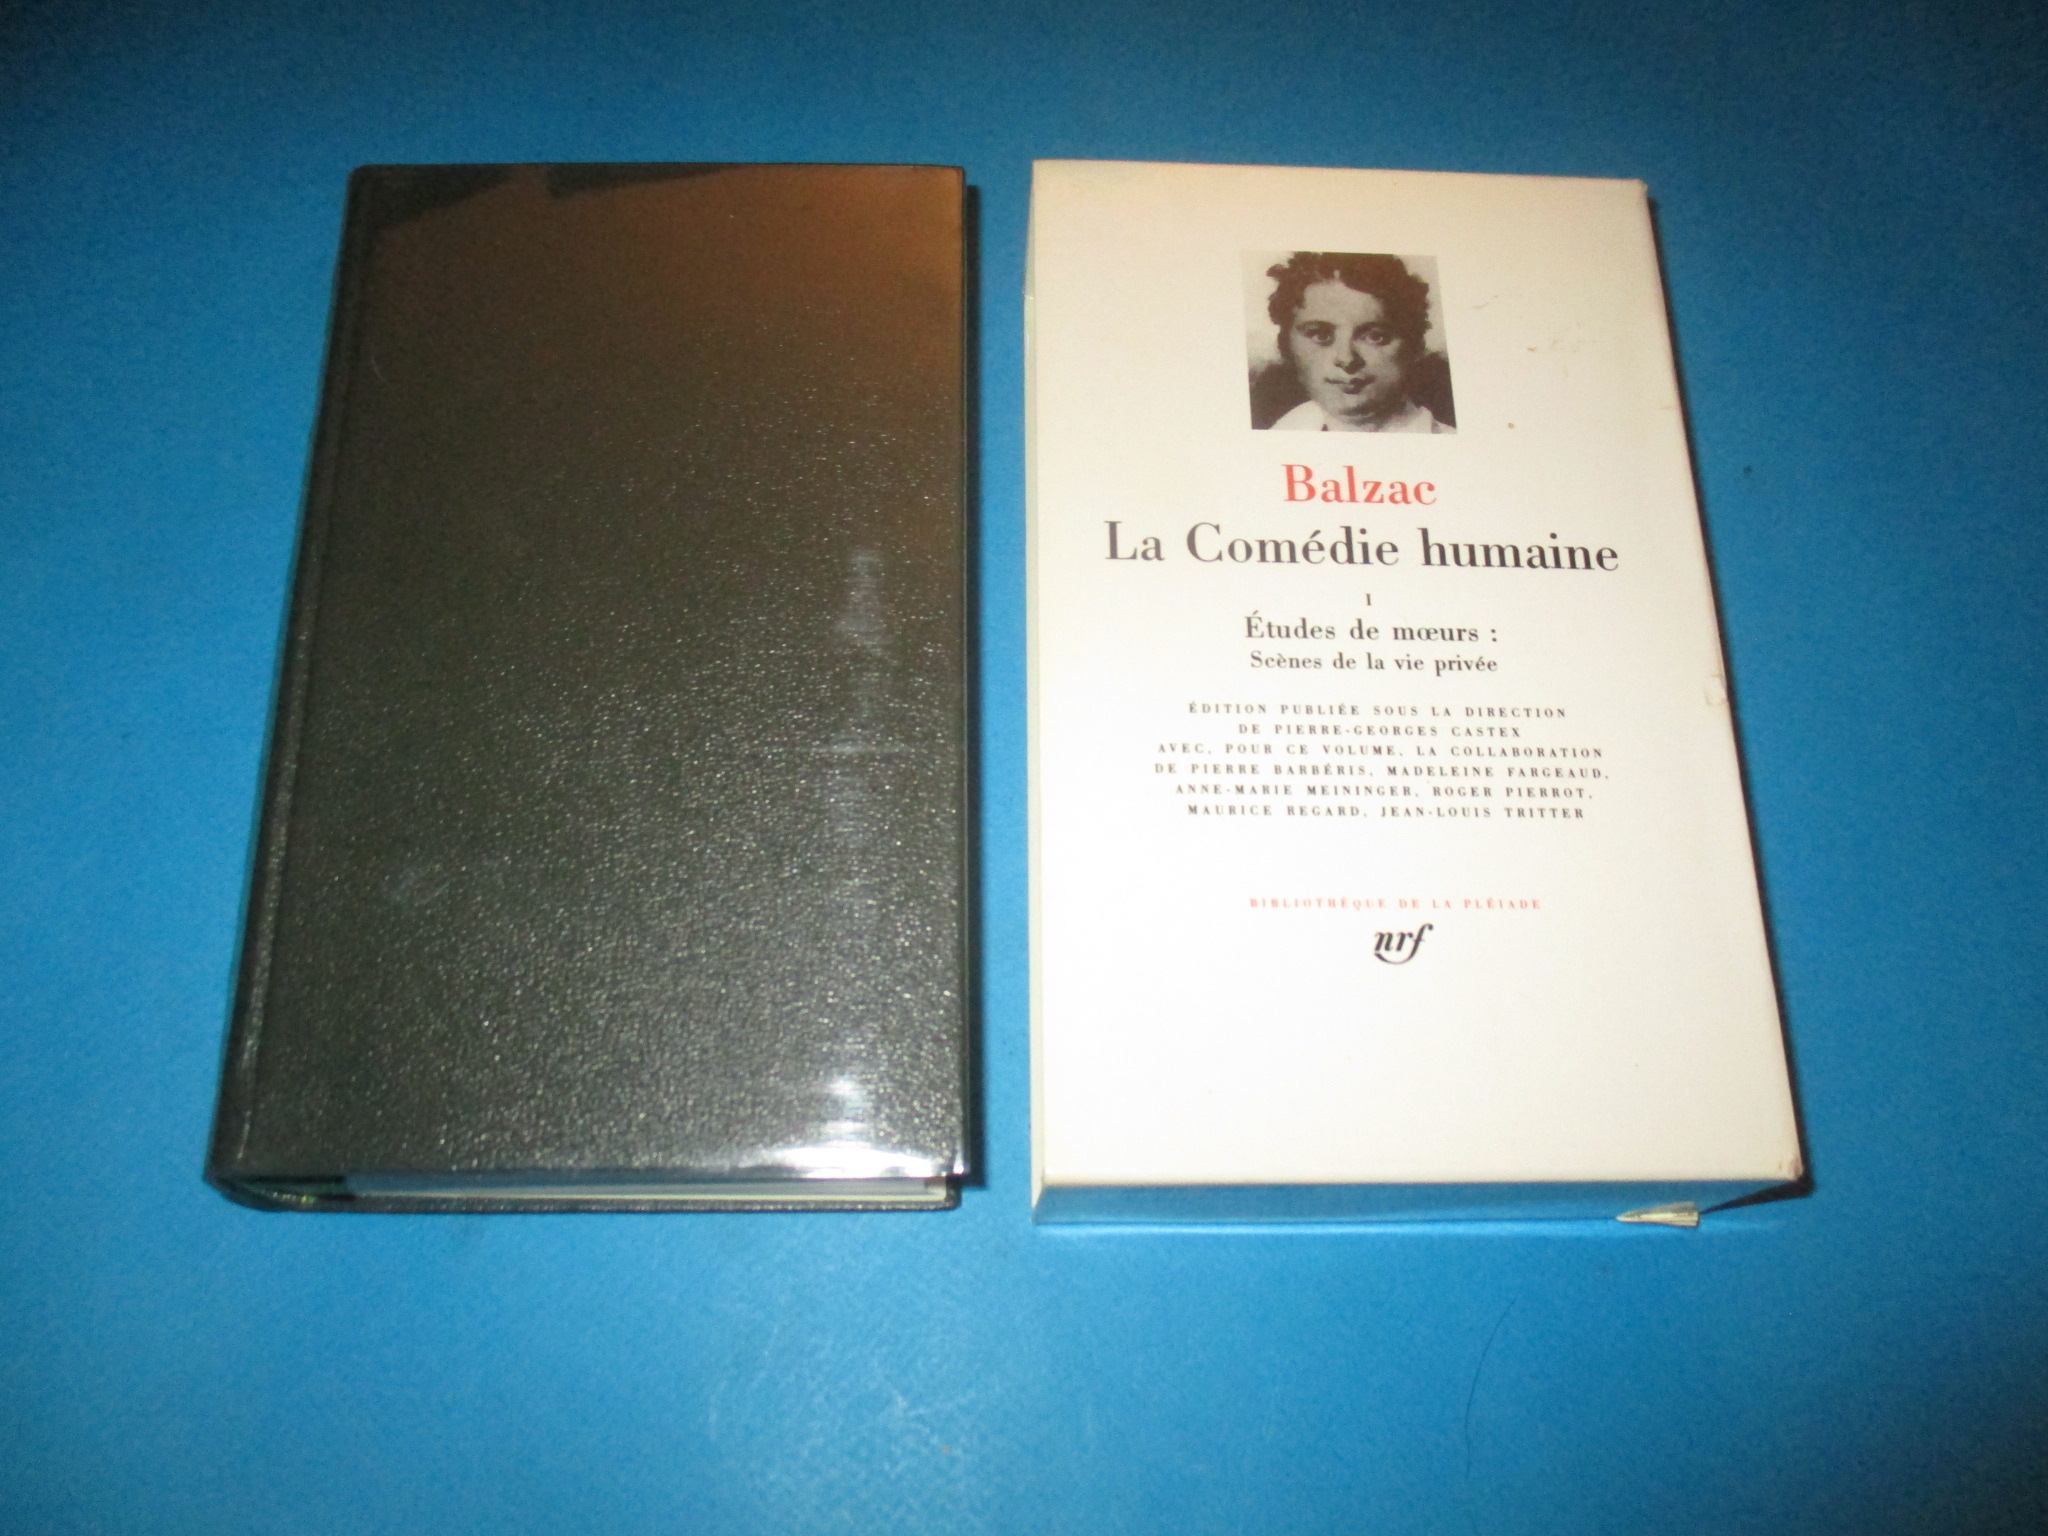 La Comédie Humaine I, tome 1, Balzac, Etudes de moeurs : Scènes de la vie privée, La Pléiade